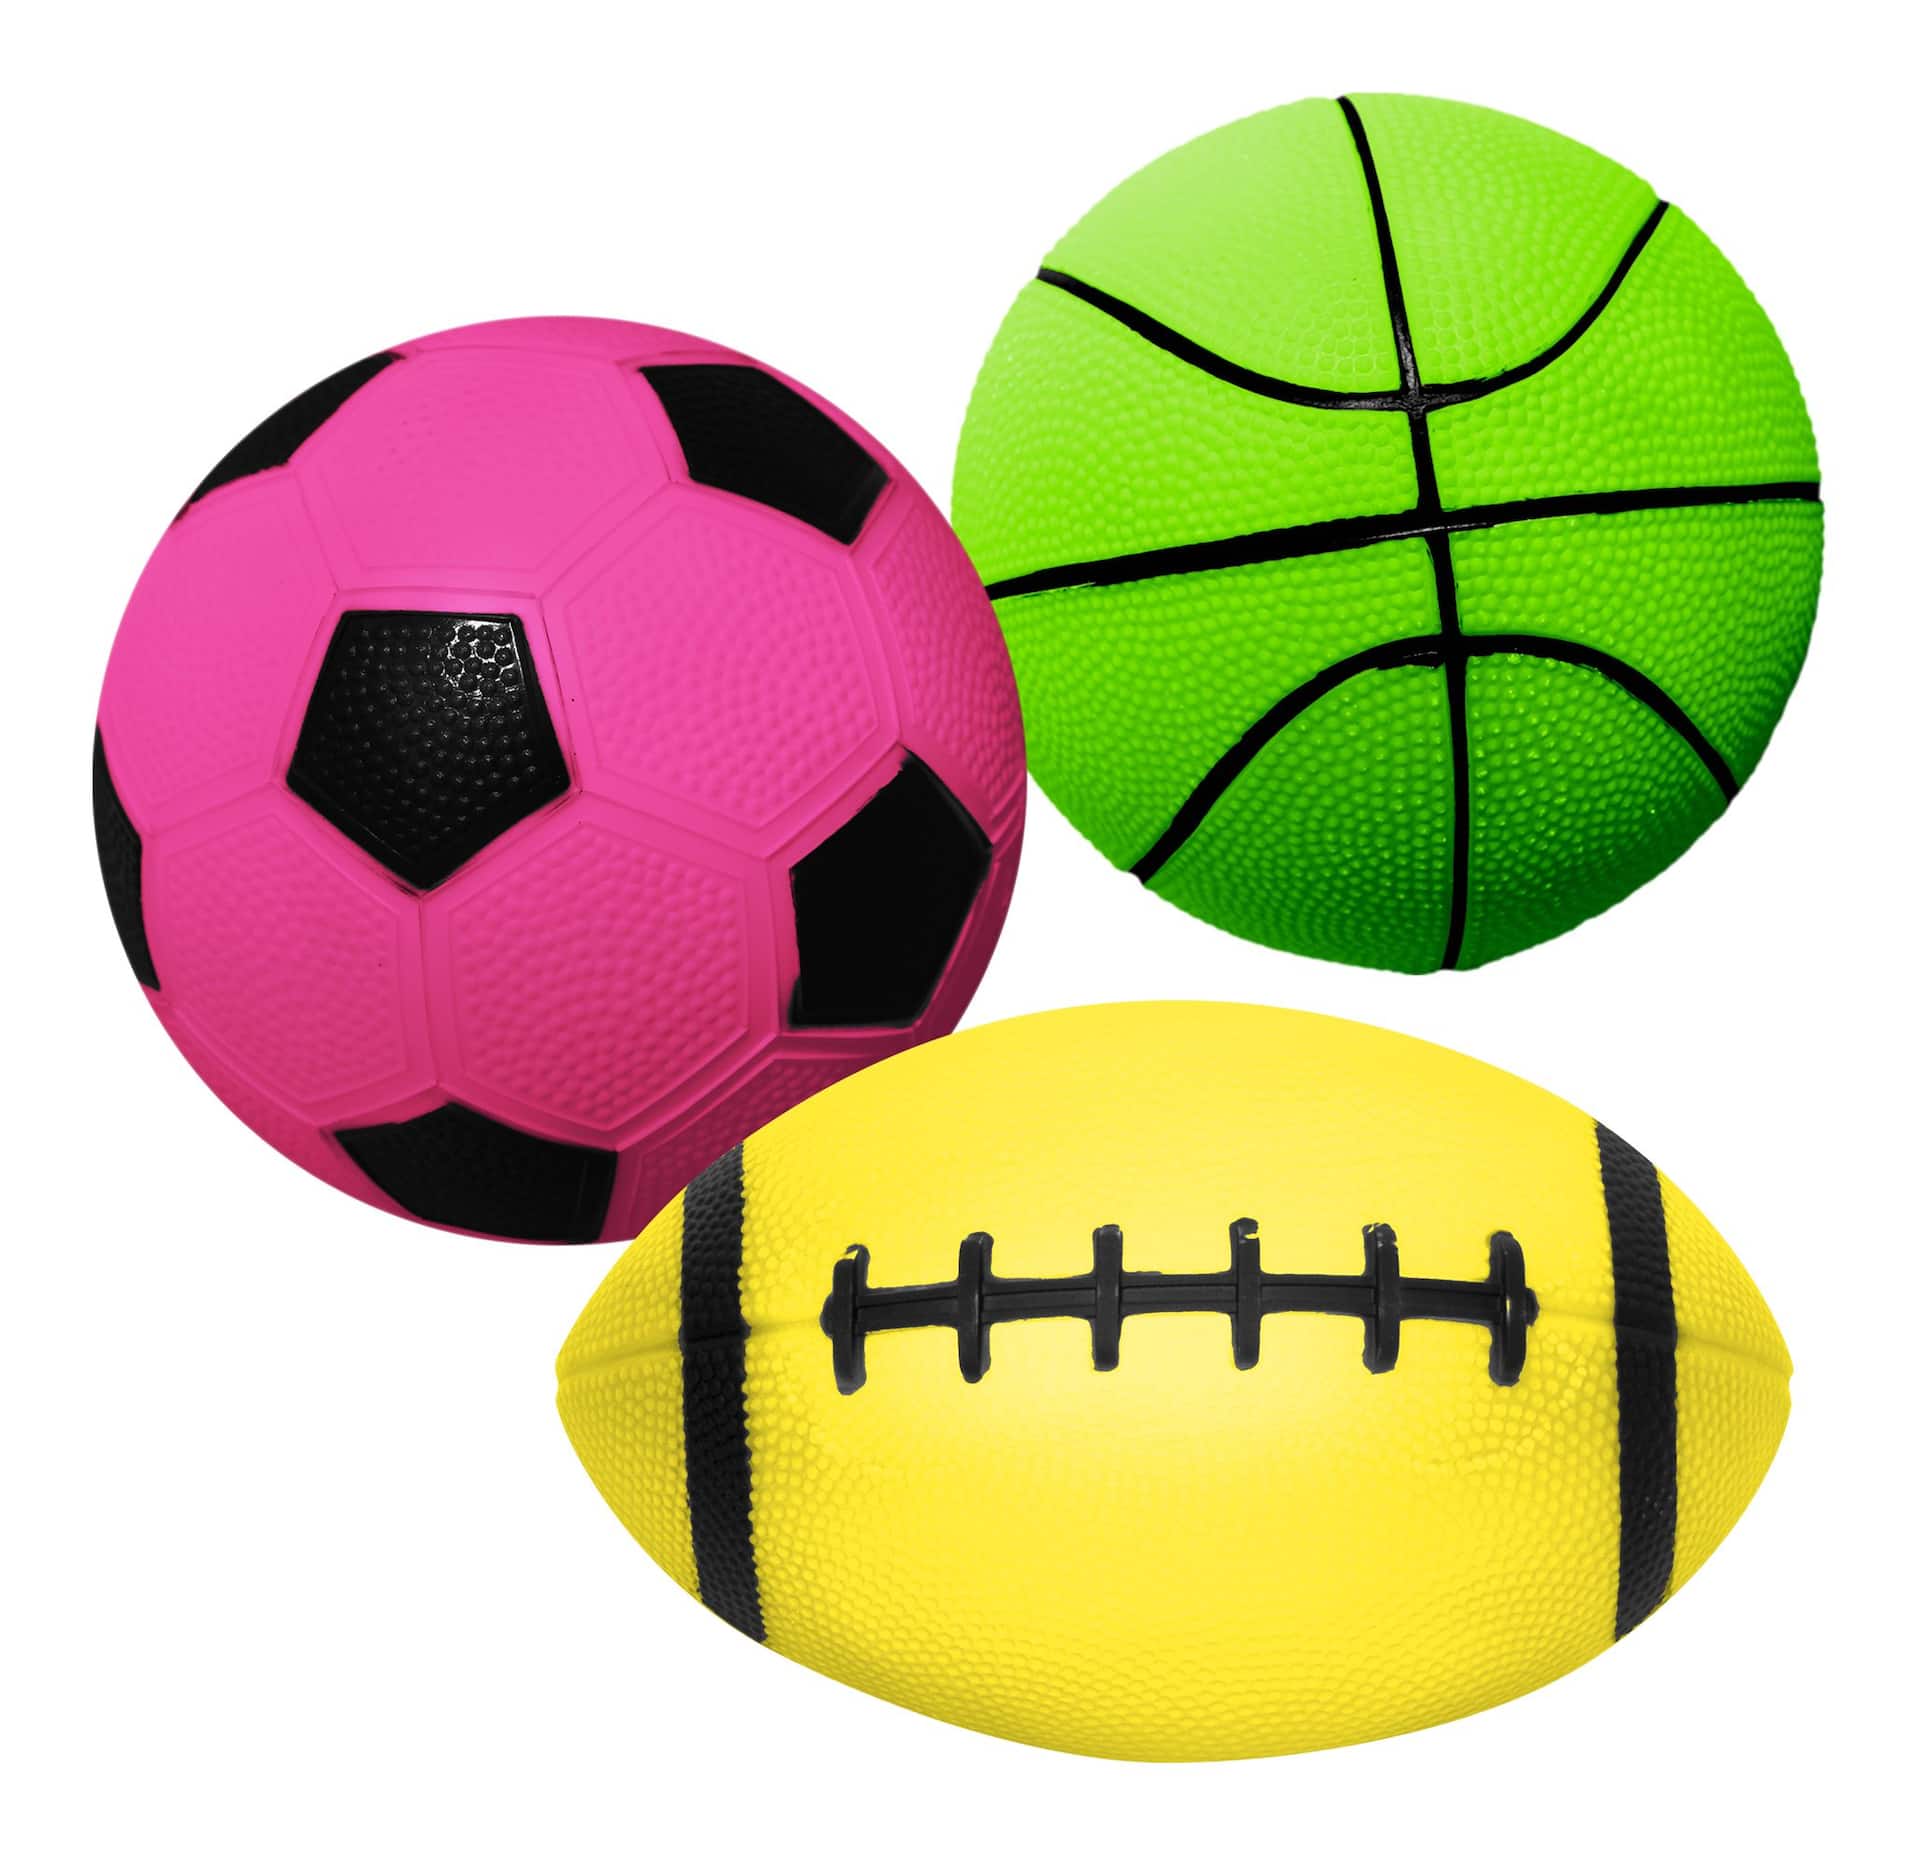 Ballon plastique, jeux exterieurs et sports